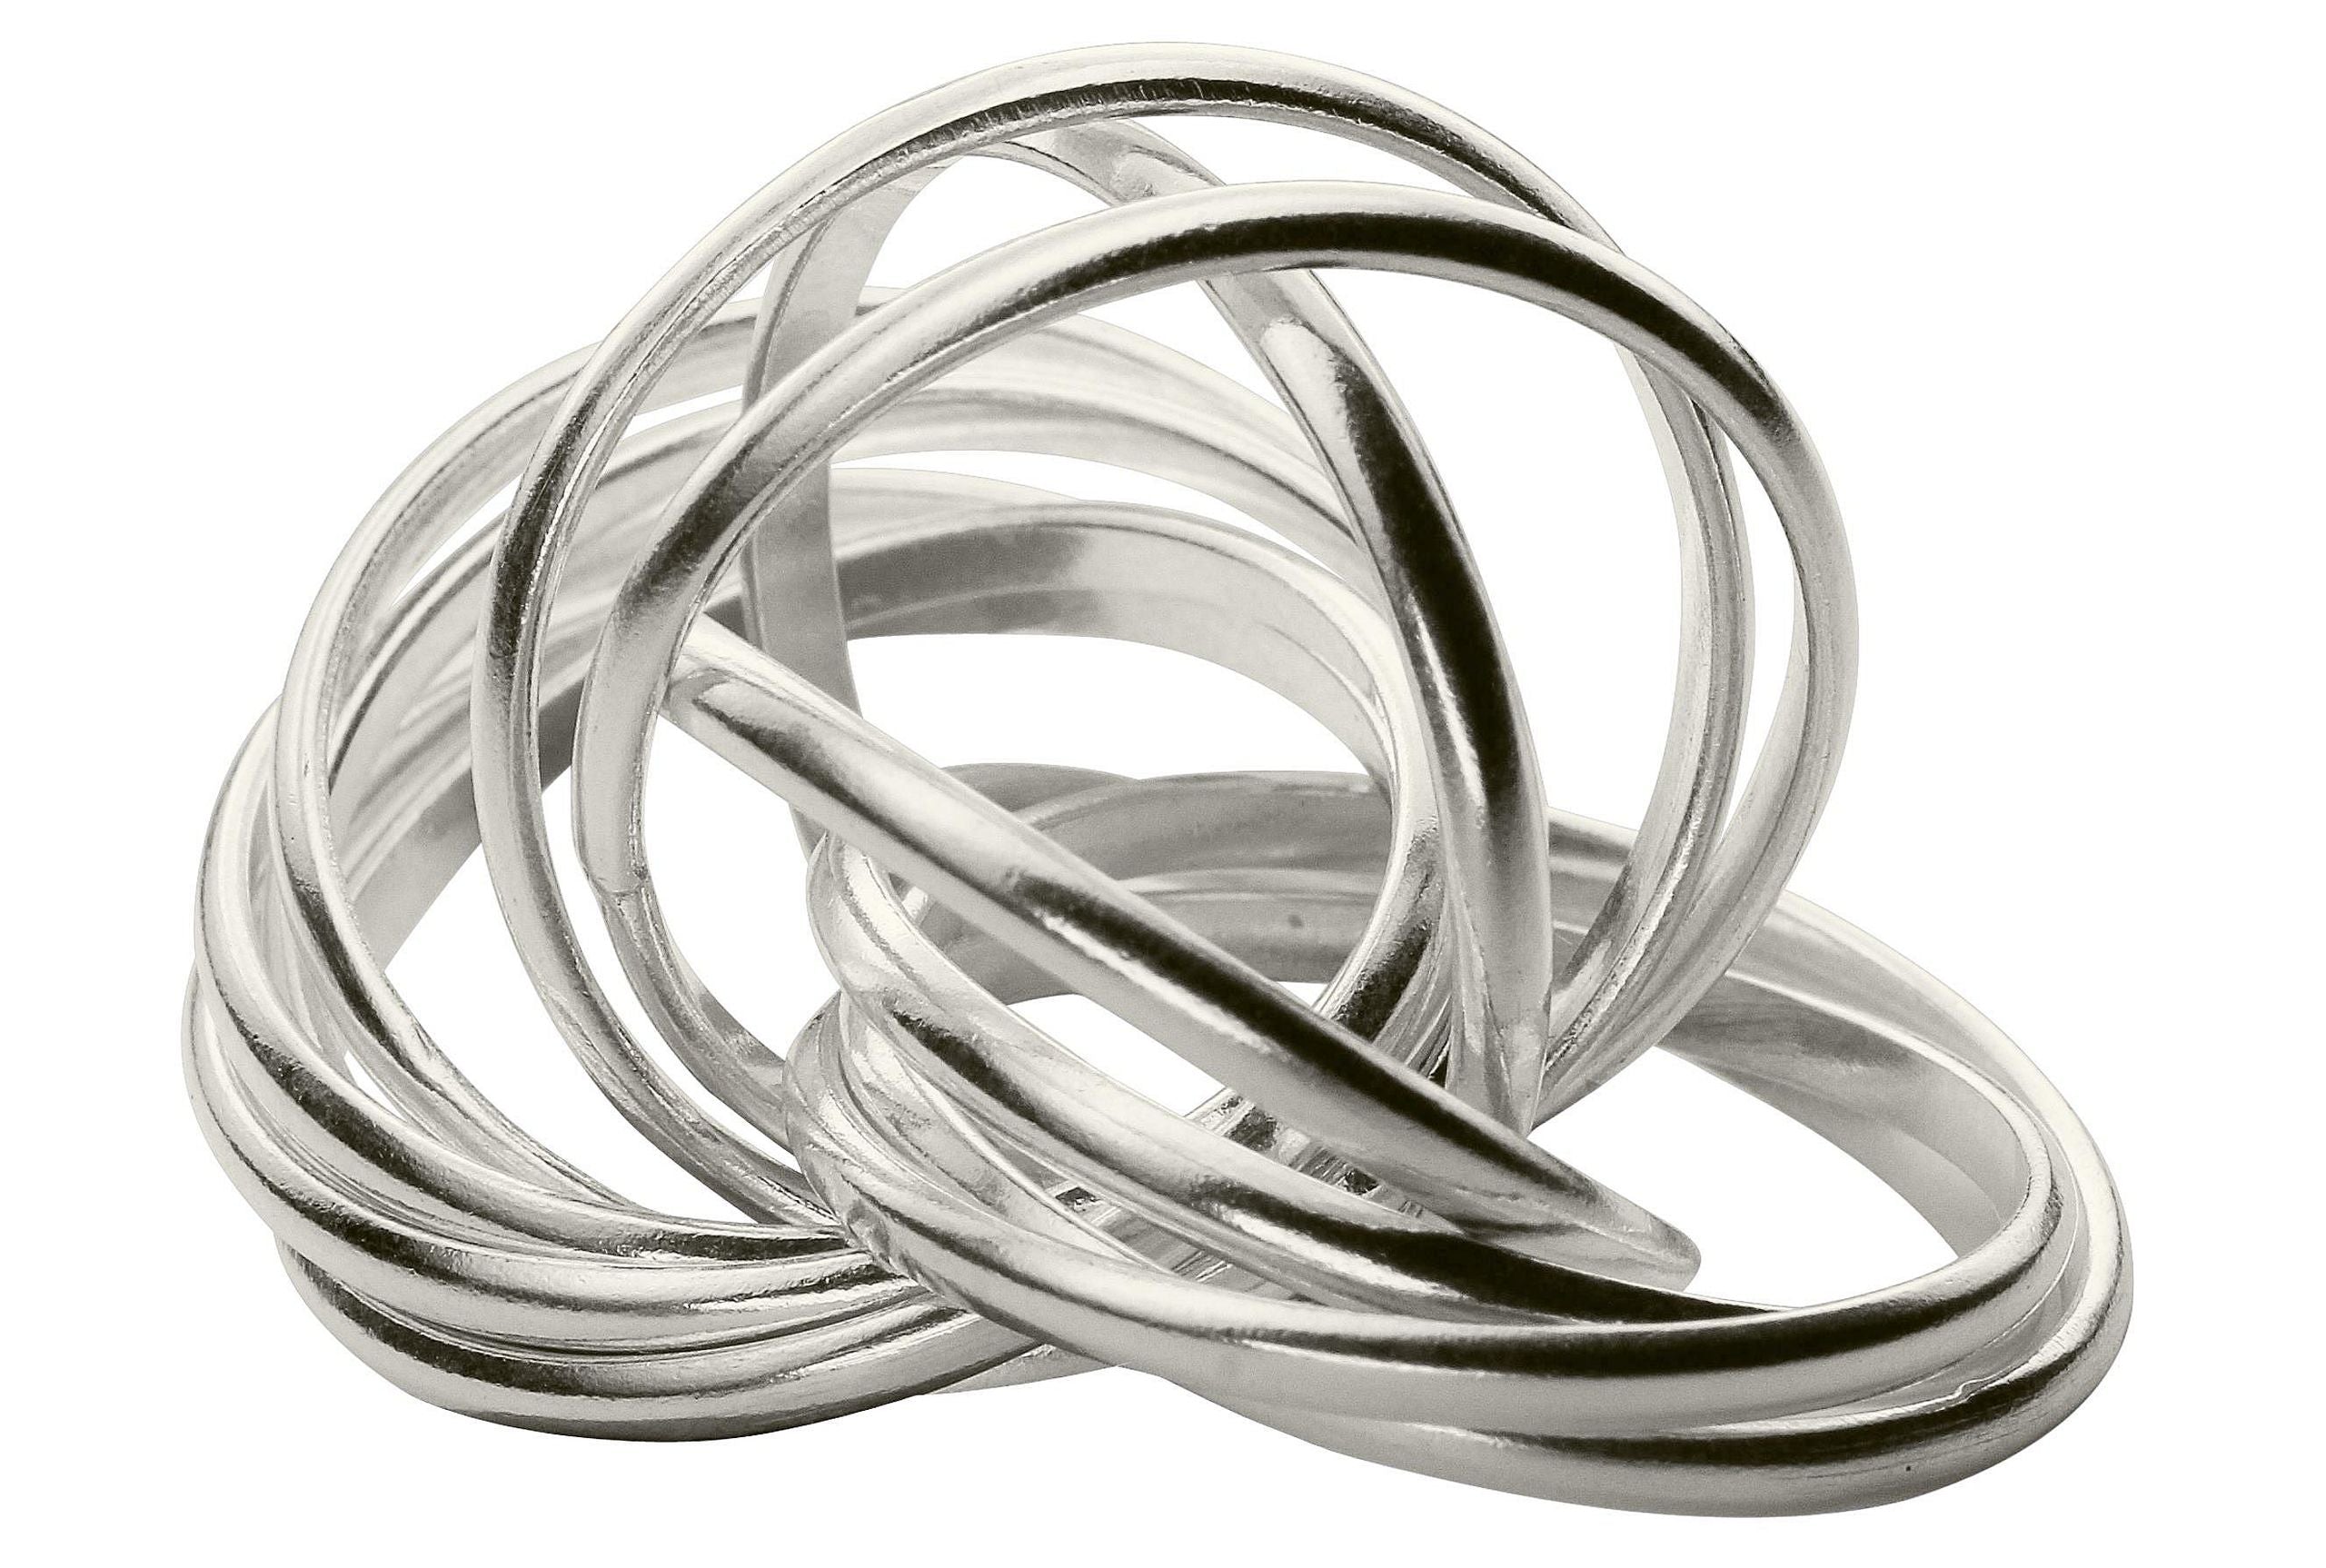 Mehrfachring für Damen aus Silber in den Größen 64 bis 70, bestehend aus zwölf einzelnen kleinen Ringen mit glänzender Oberfläche.